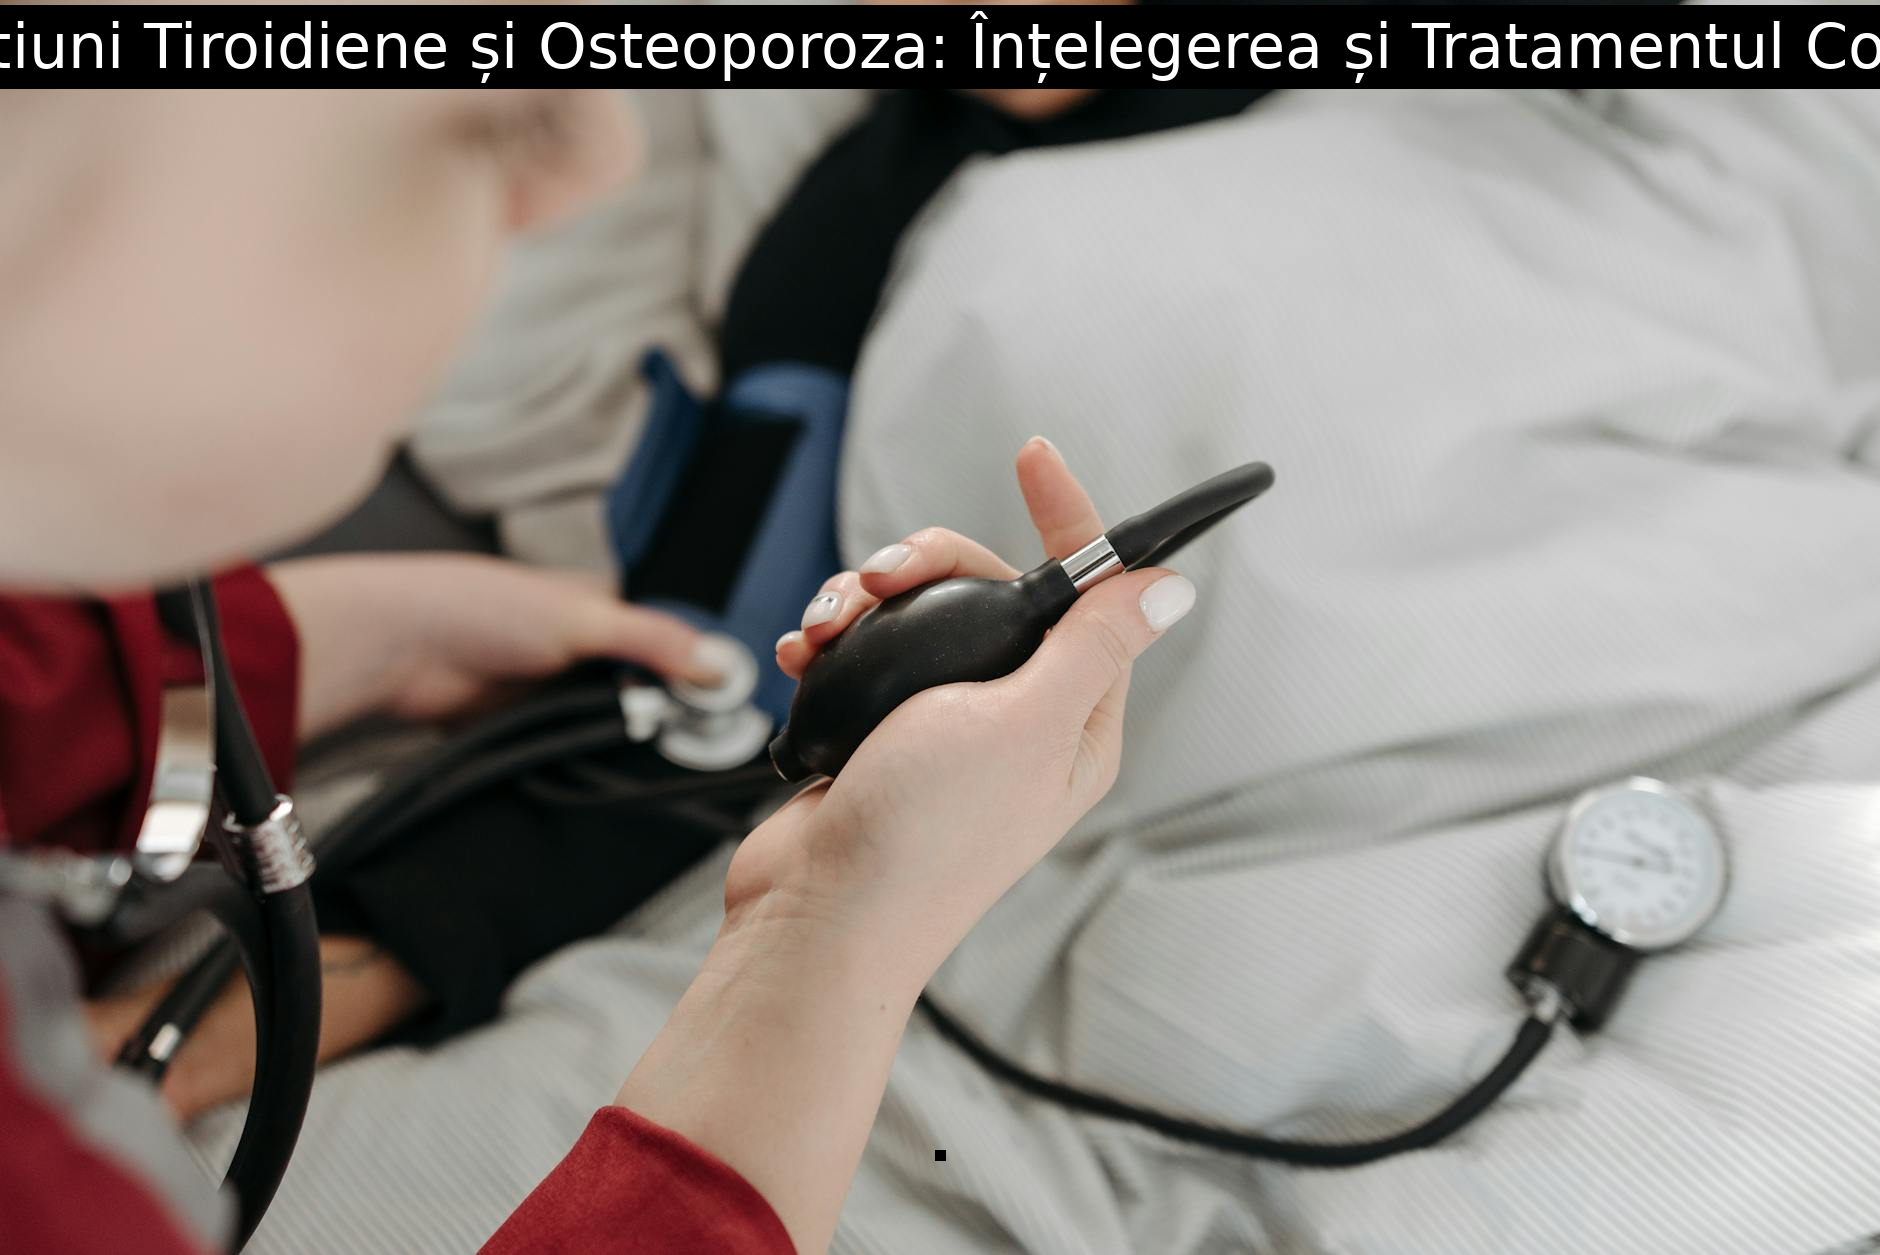 Afectiuni Tiroidiene și Osteoporoza: Înțelegerea și Tratamentul Corect.